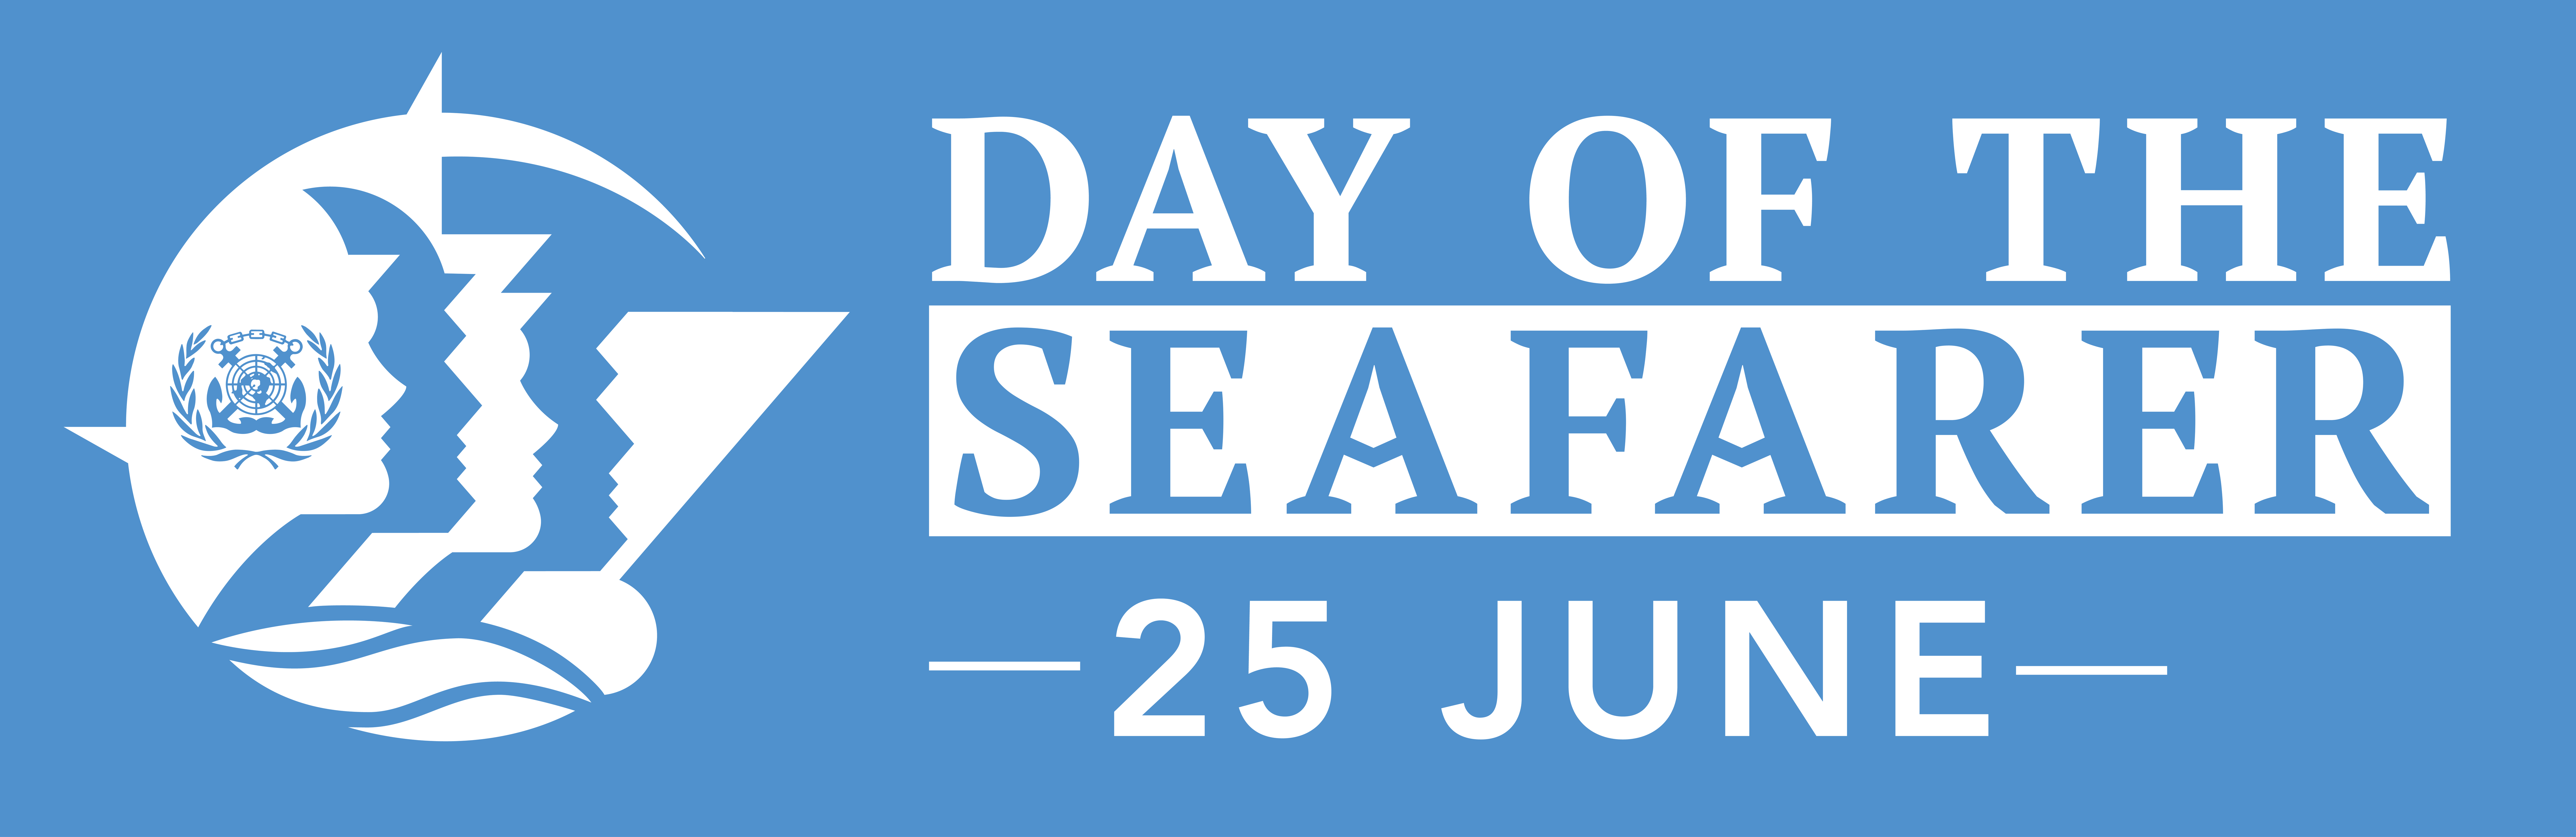 ECSA celebrates the Day of the Seafarer